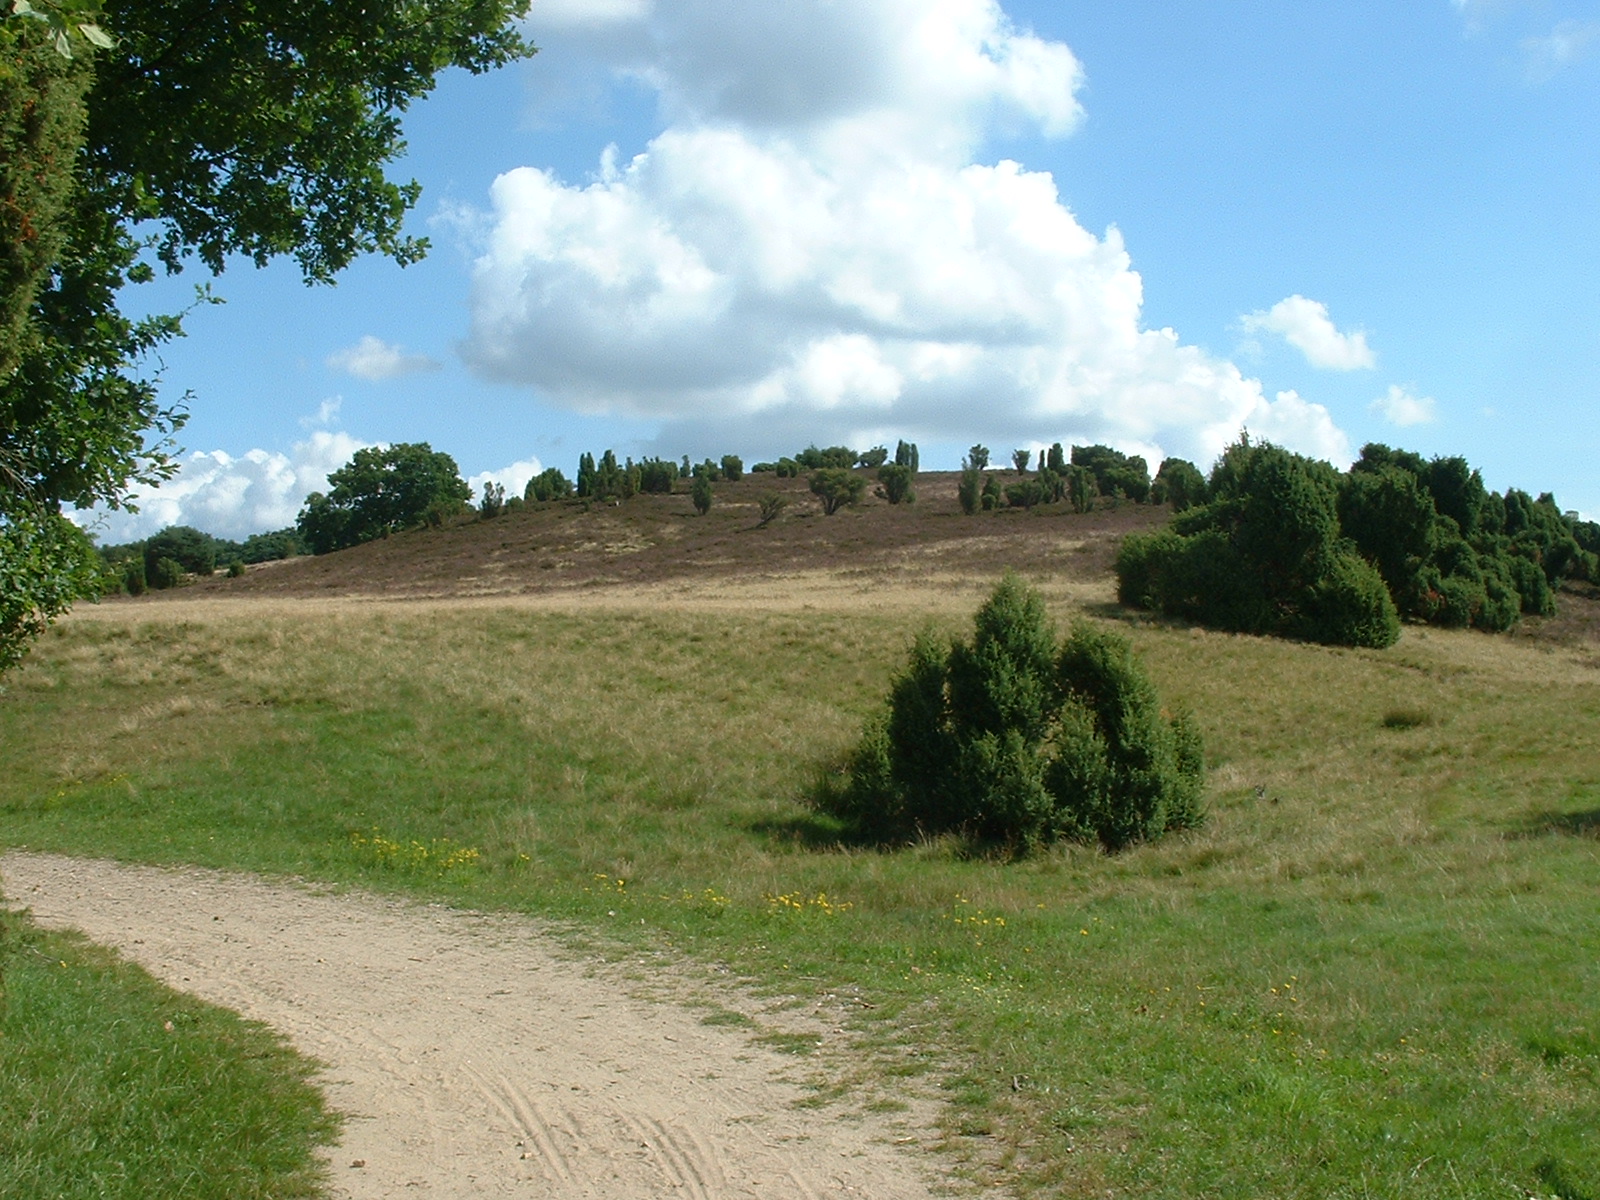 Sommerwetter in der Lüneburger Heide